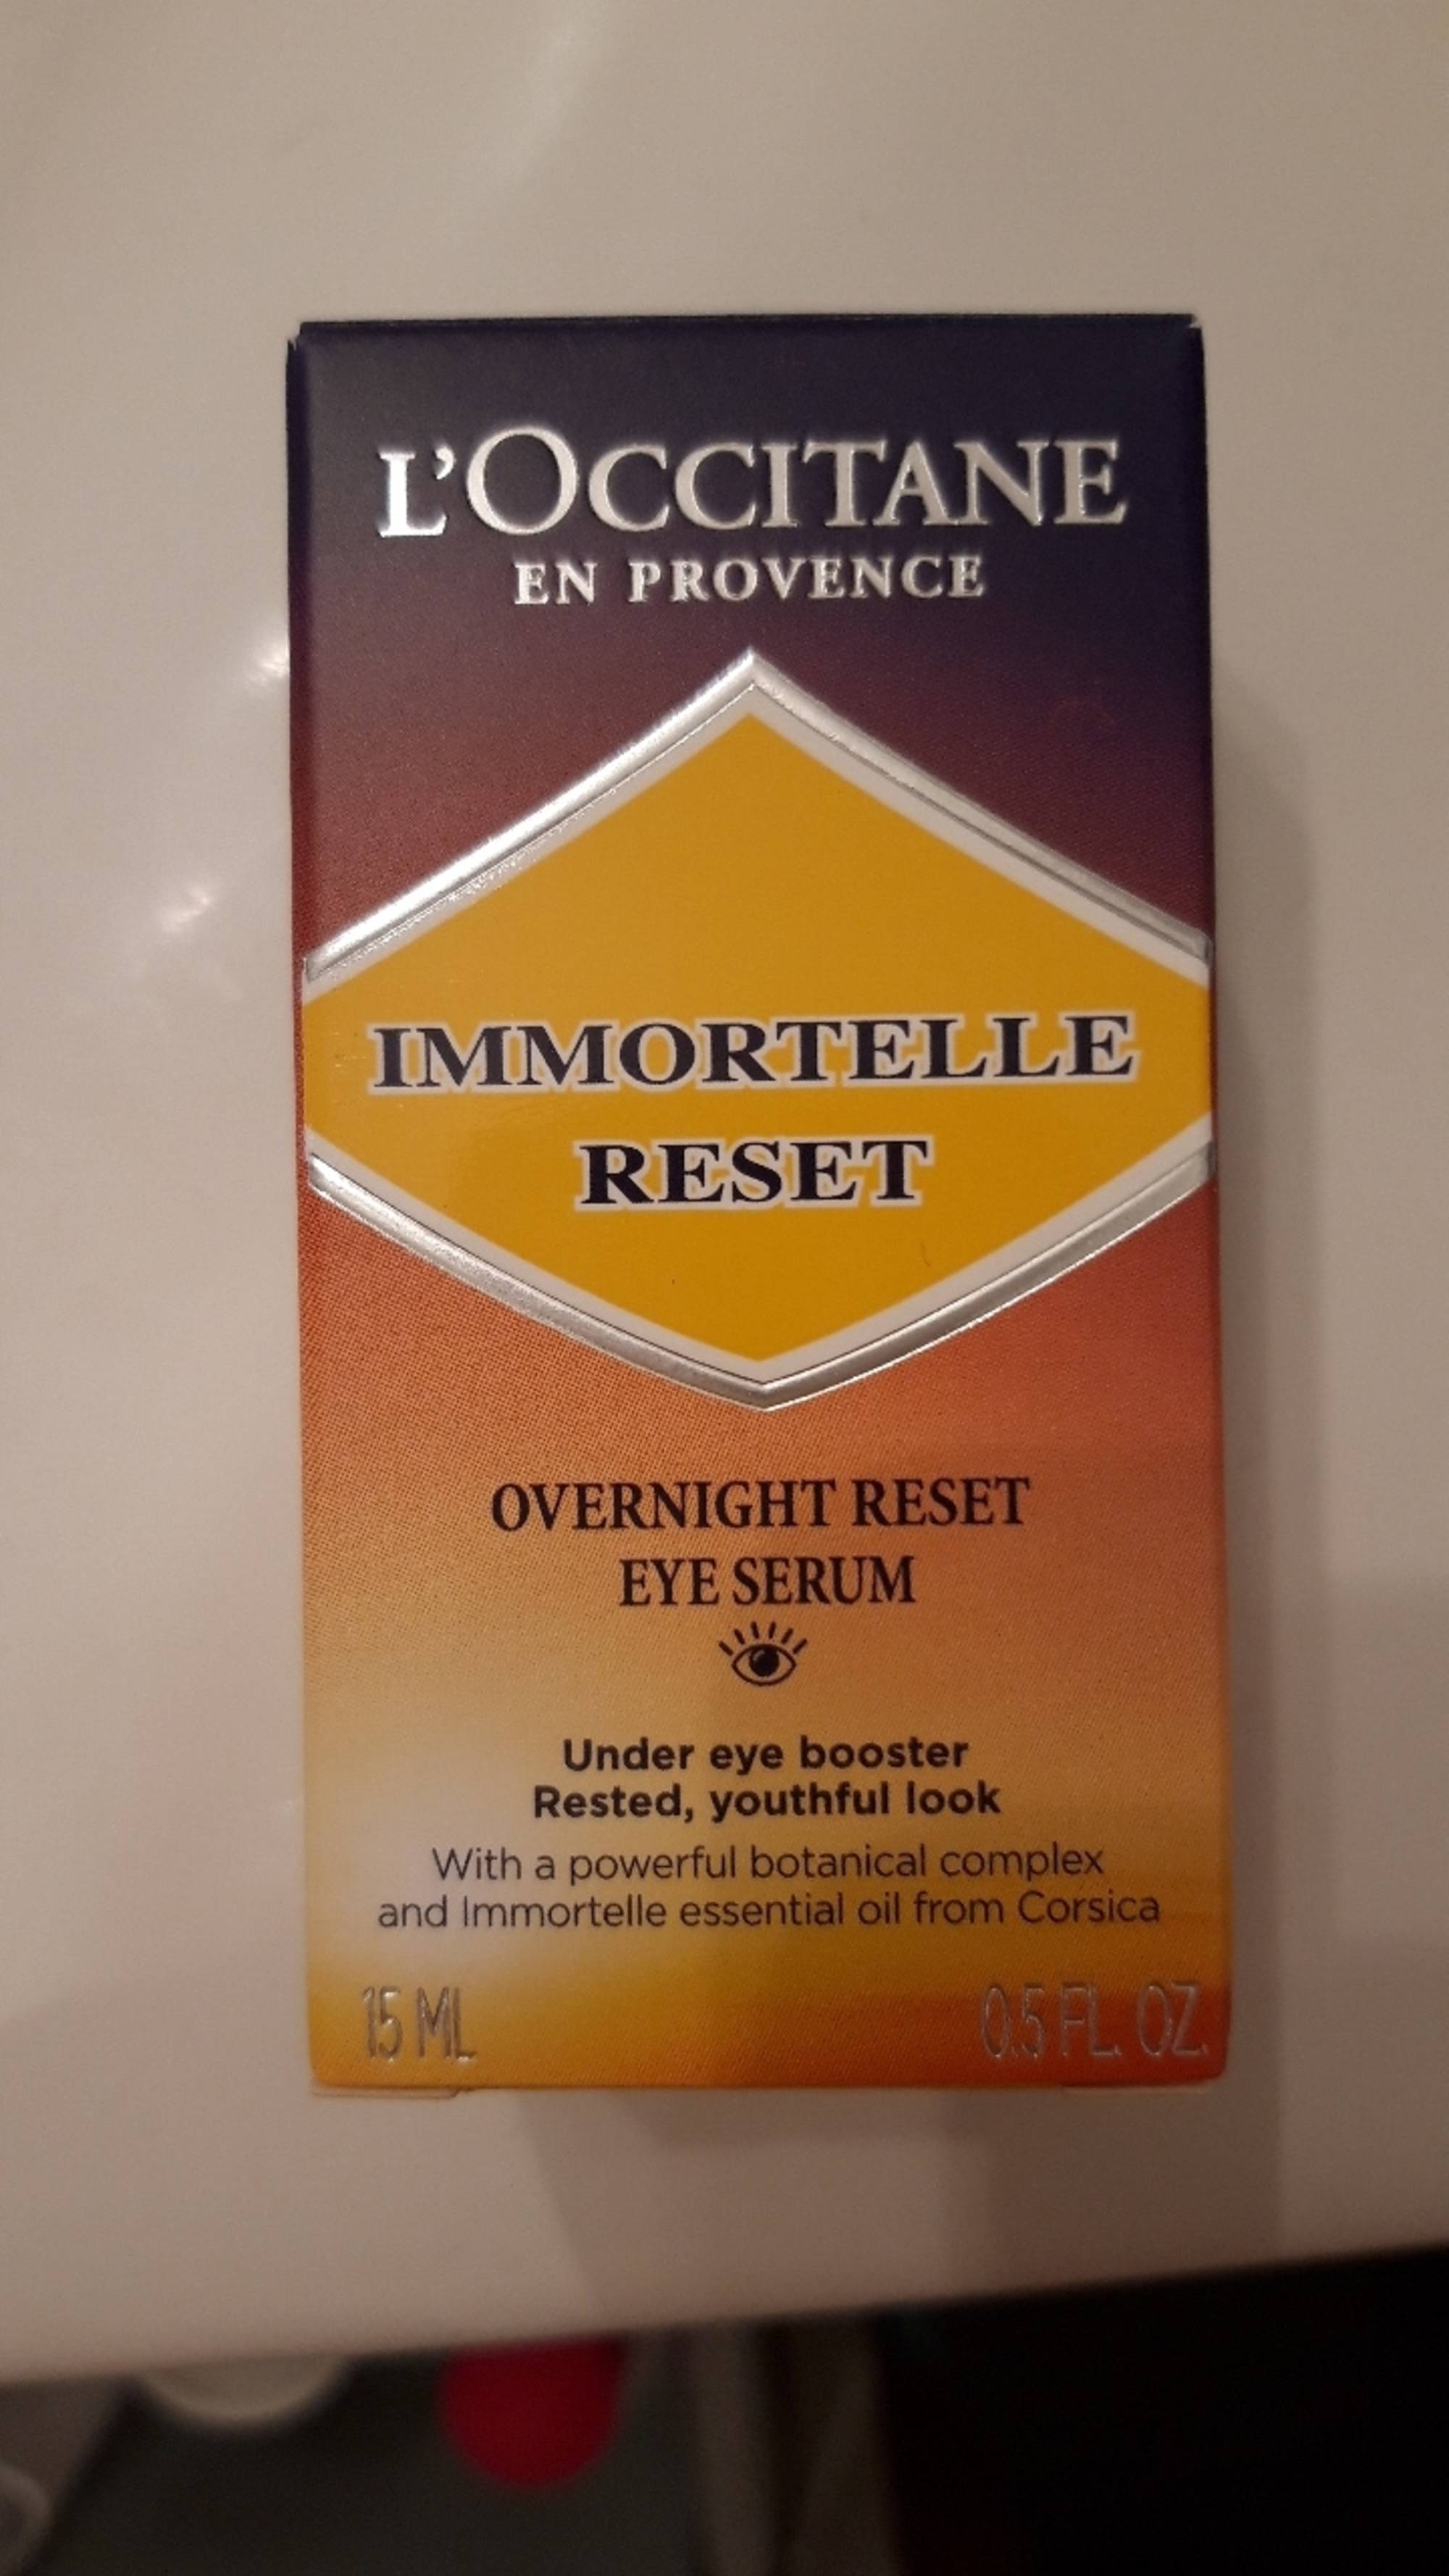 L'OCCITANE EN PROVENCE - Immortelle reset - Eye serum